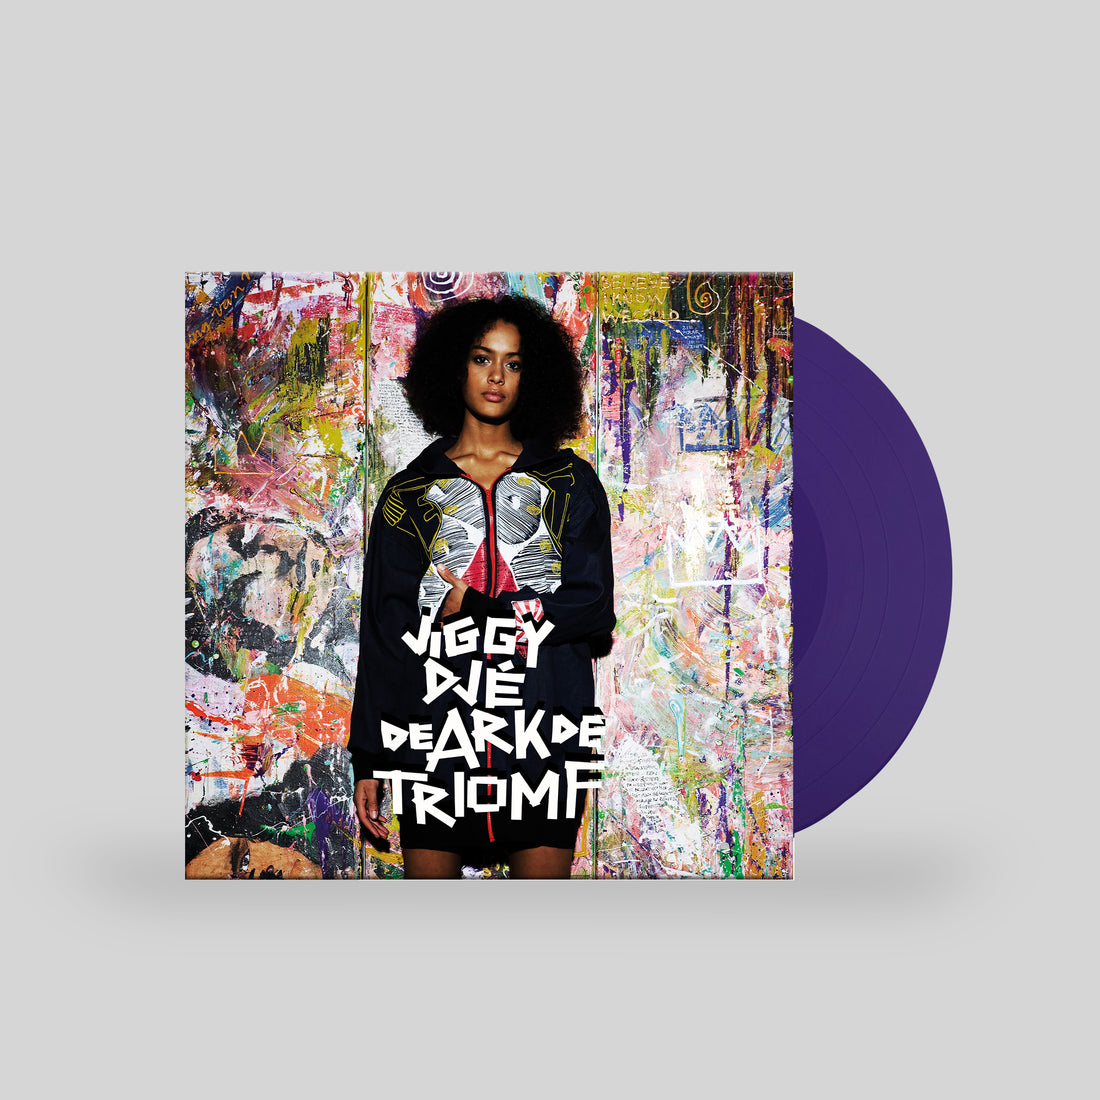 De Ark De Triomf (LP Purple Solid)